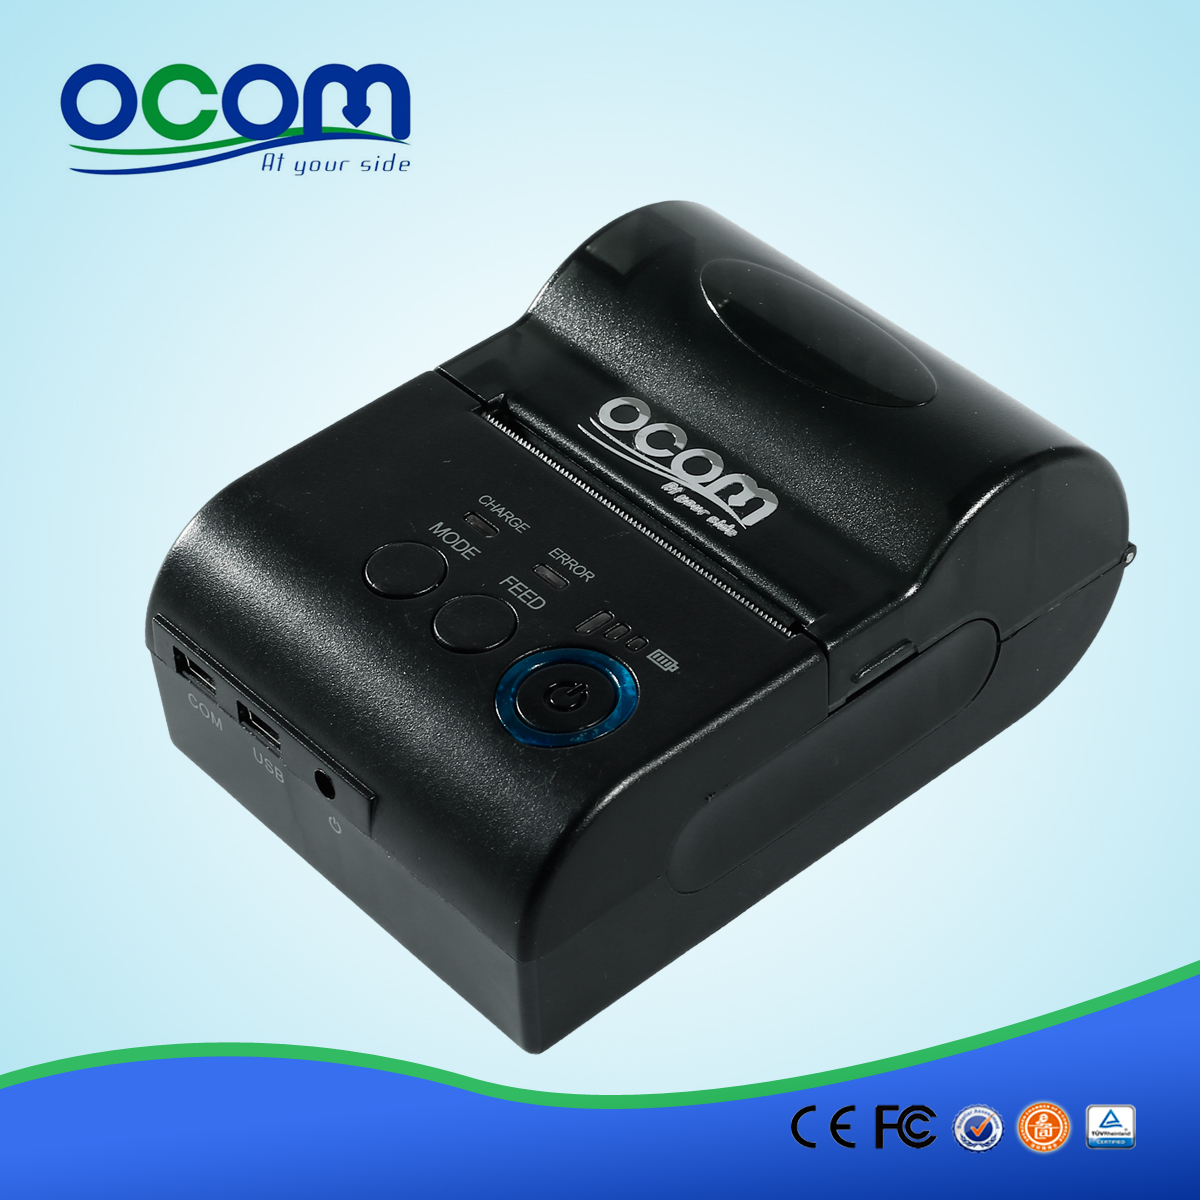 OCPP-M03 58毫米迷你便携式蓝牙热敏打印机